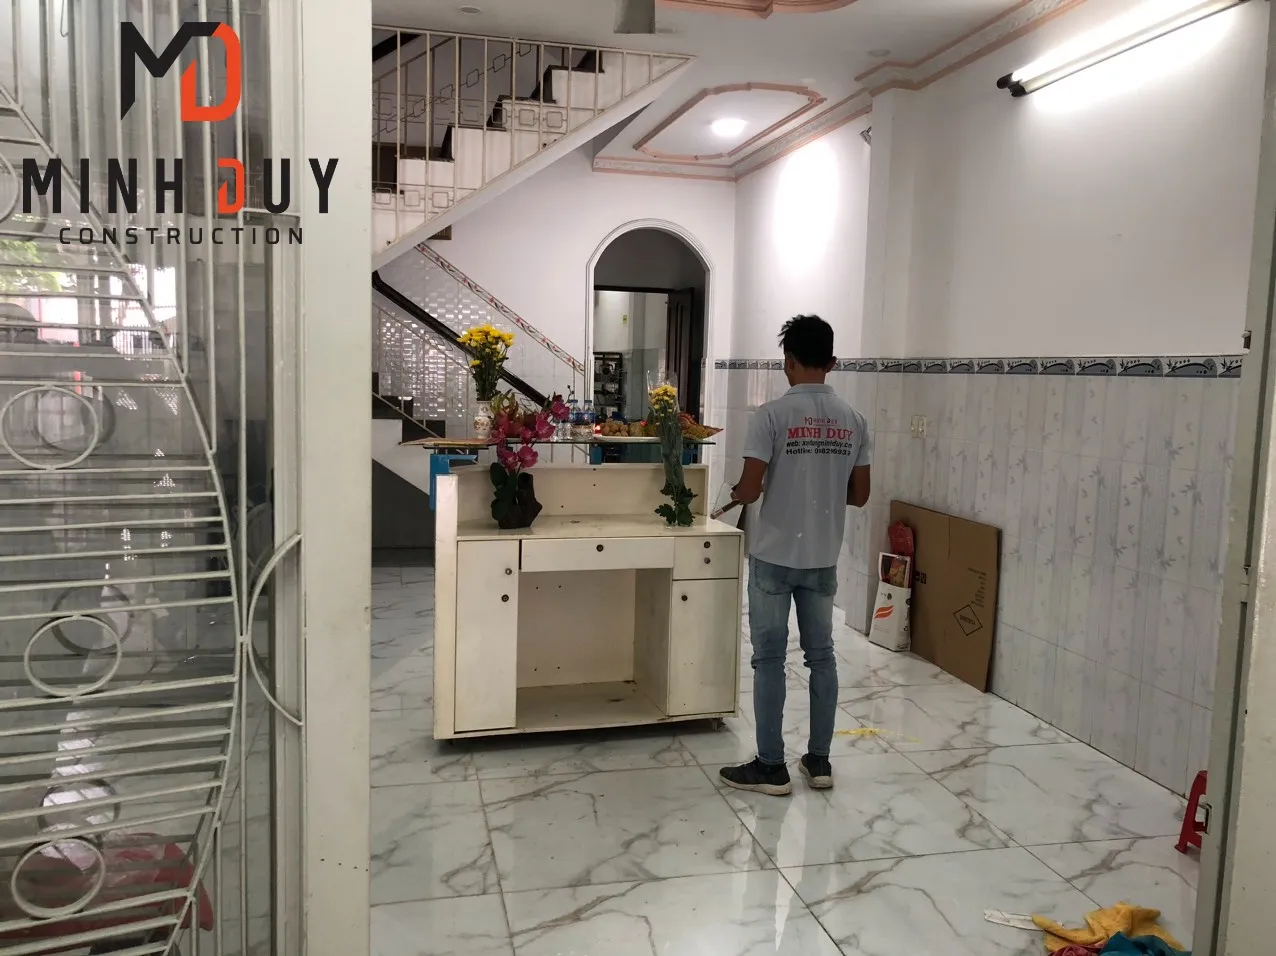 Sửa chữa nhà phường 5 quận 8 - Xây Dựng Minh Duy